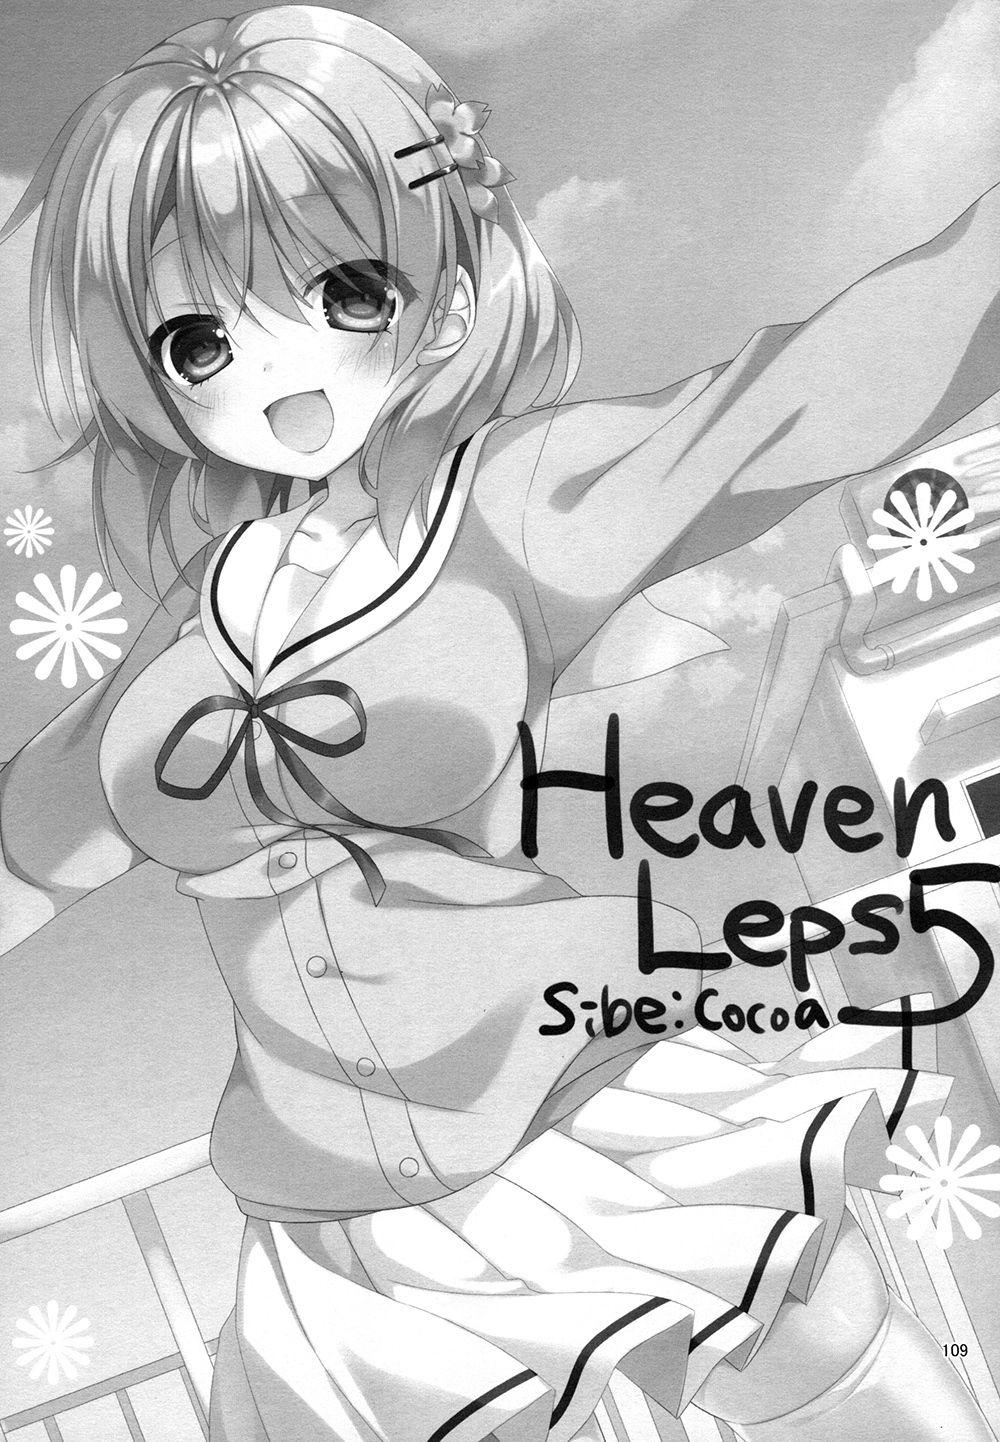 Heaven Lepus5 Side:Cocoa 2